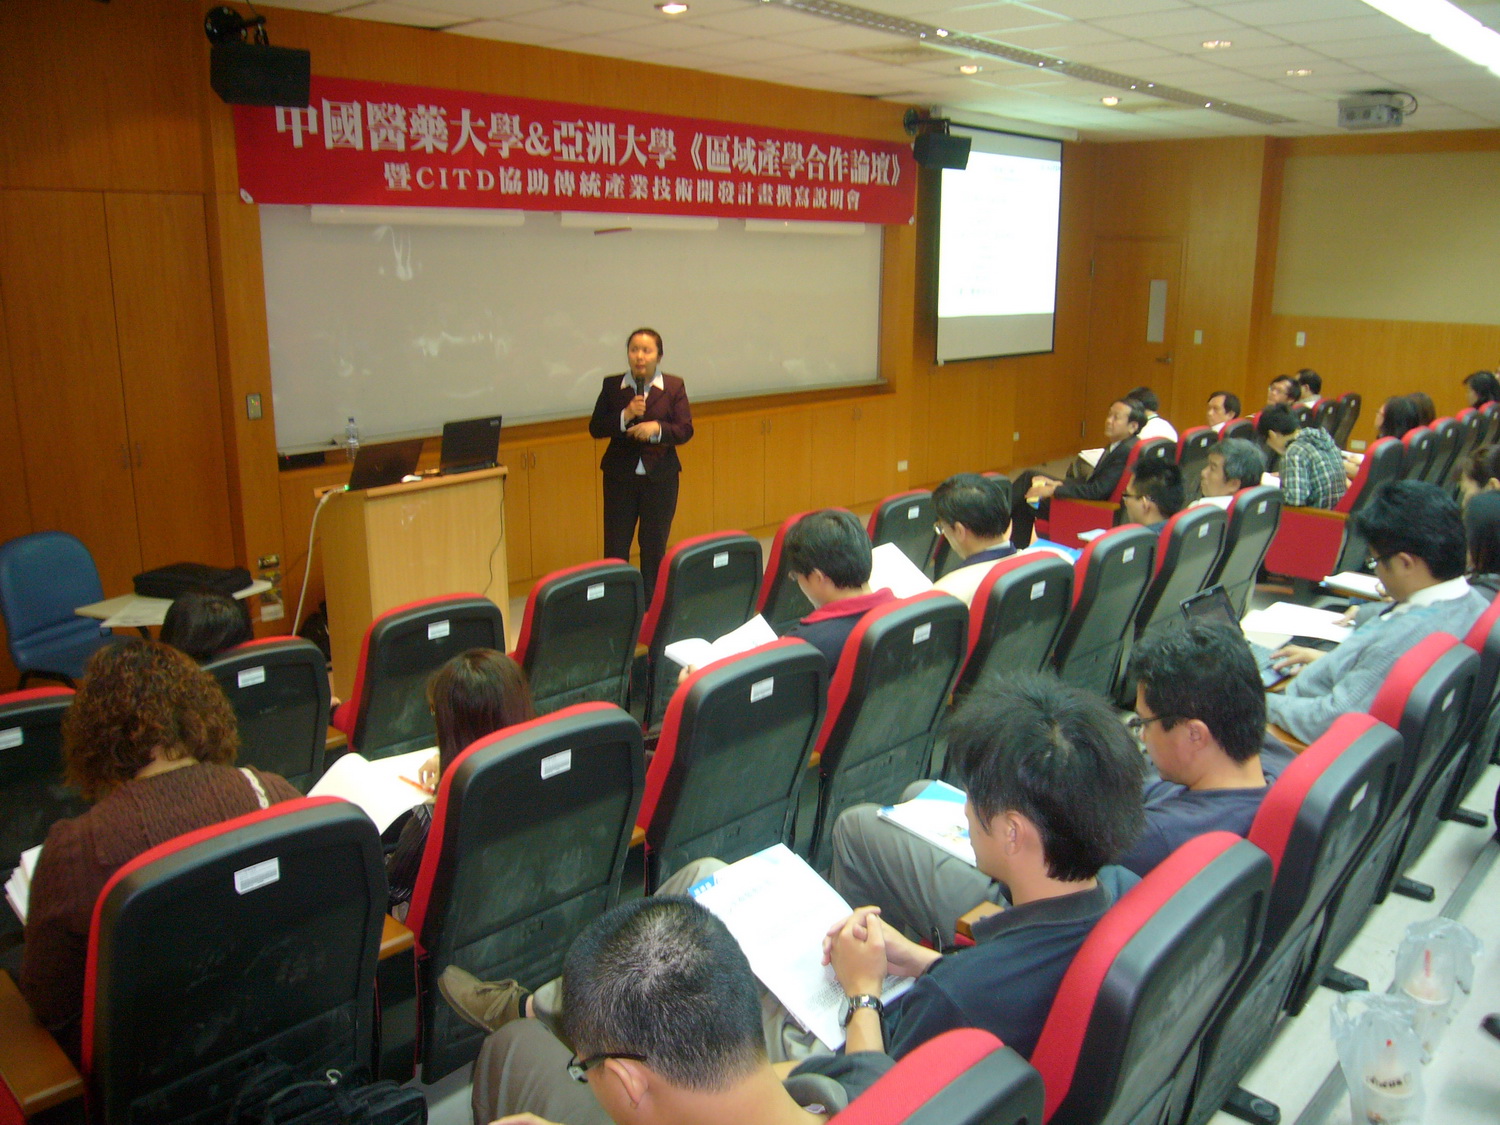 中國生產力中心經理陳淑琴傳授業者向政府申請補助的要領